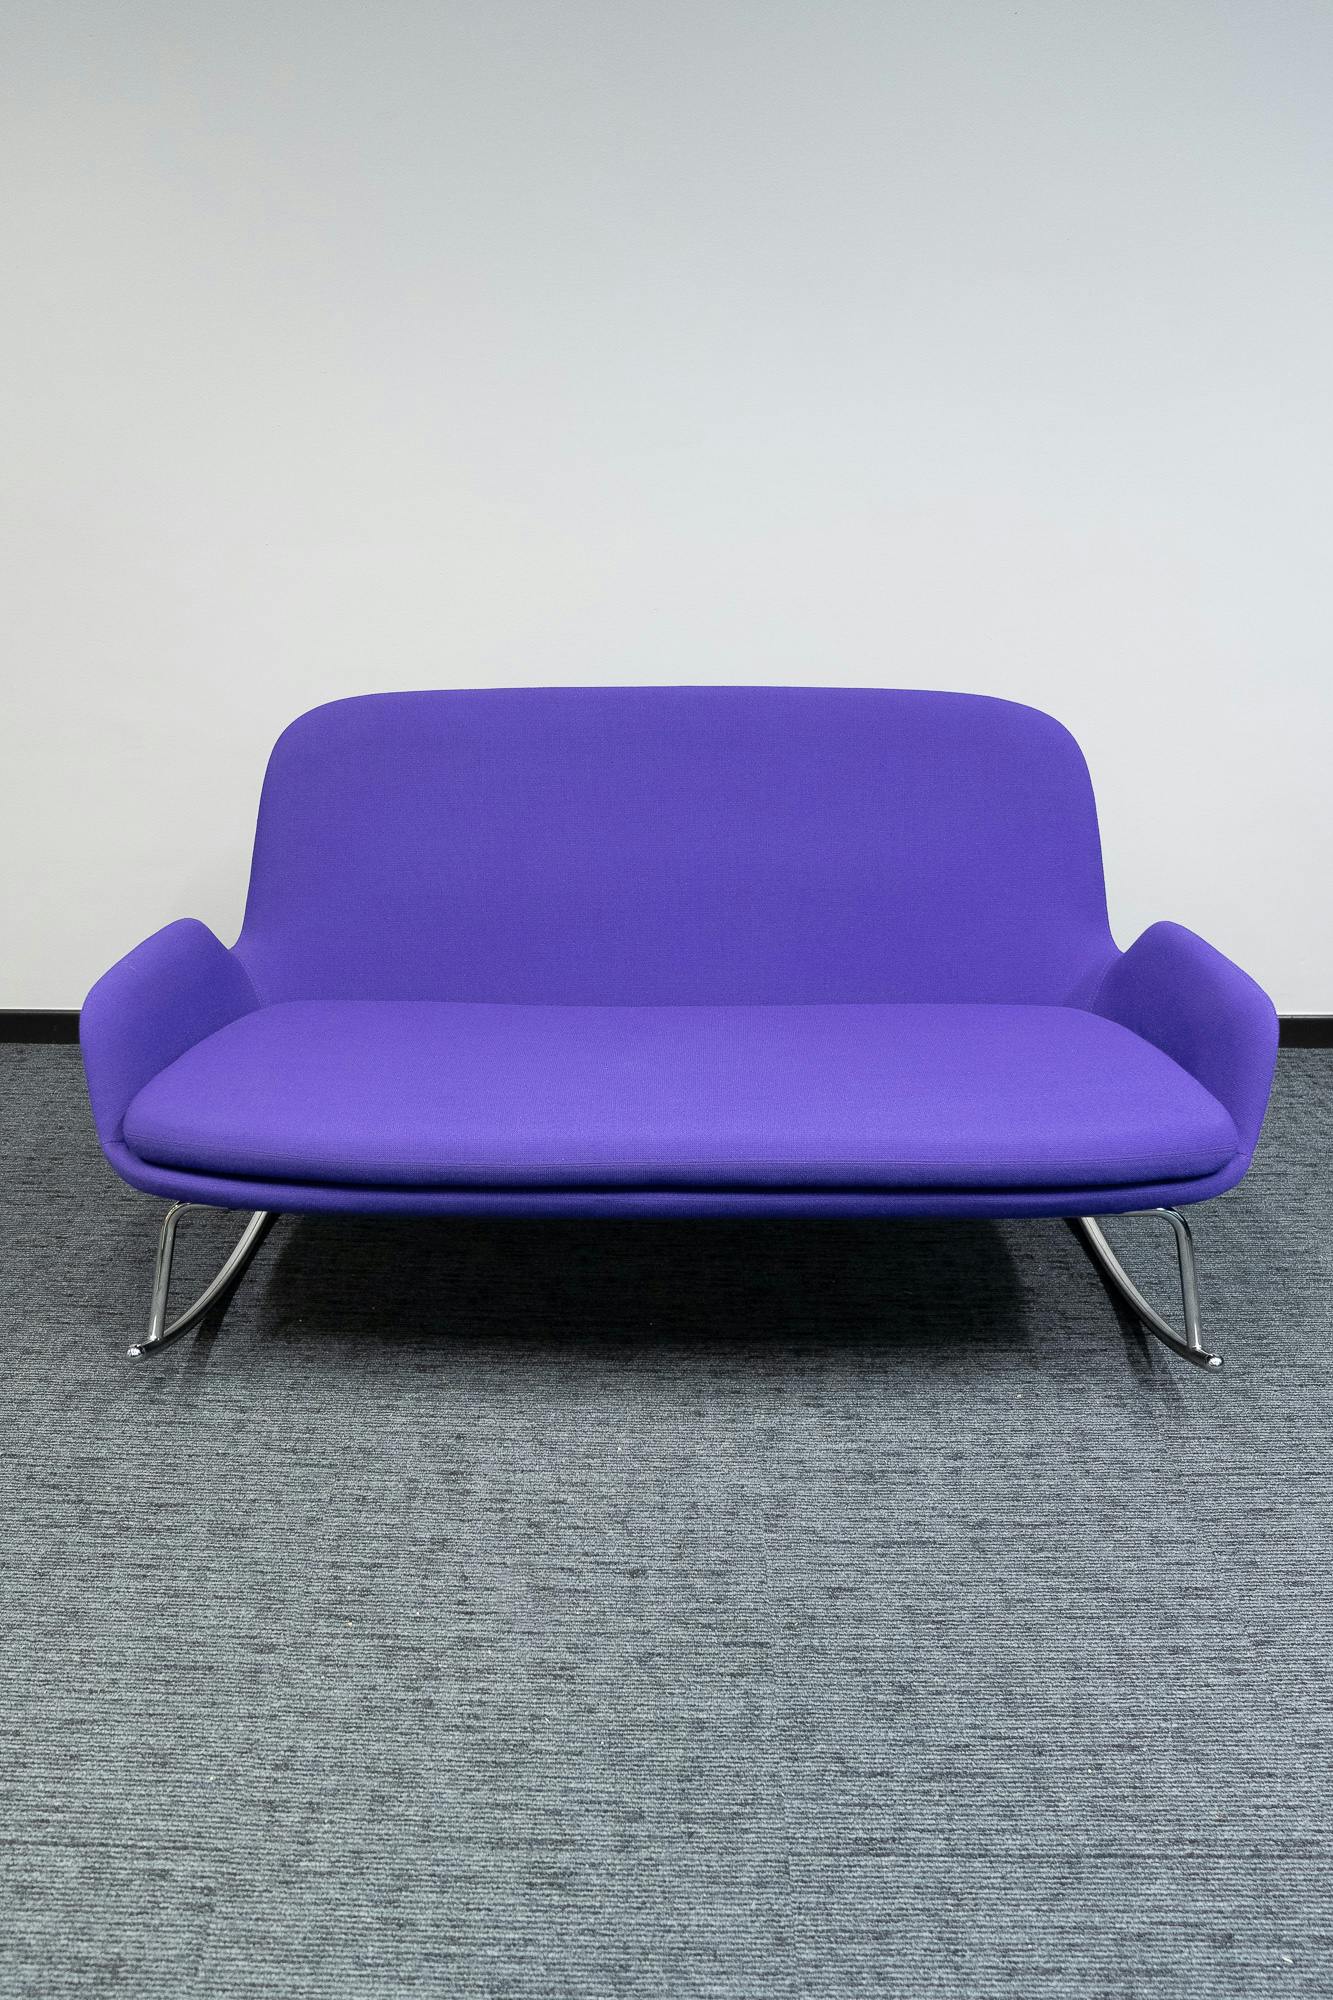 Normann paars design schommelstoel - Tweedehands kwaliteit "Leunstoelen en luiers" - Relieve Furniture